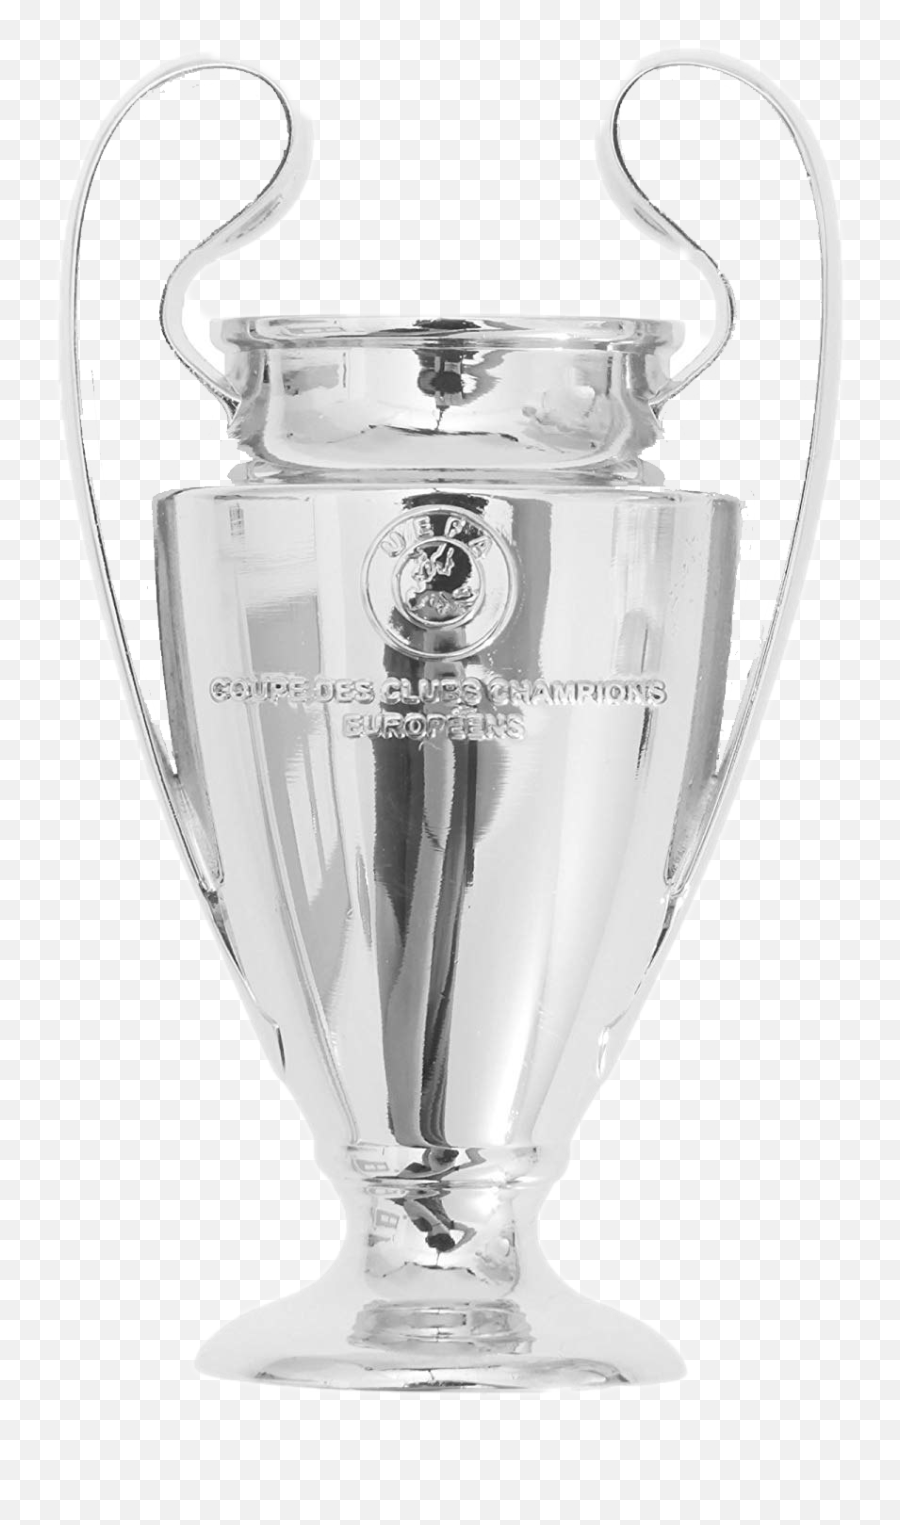 Uefa Champions League Trophy Png Image - Transparent Champions League Trophy Png Emoji,Pepsico Emoji Champions League